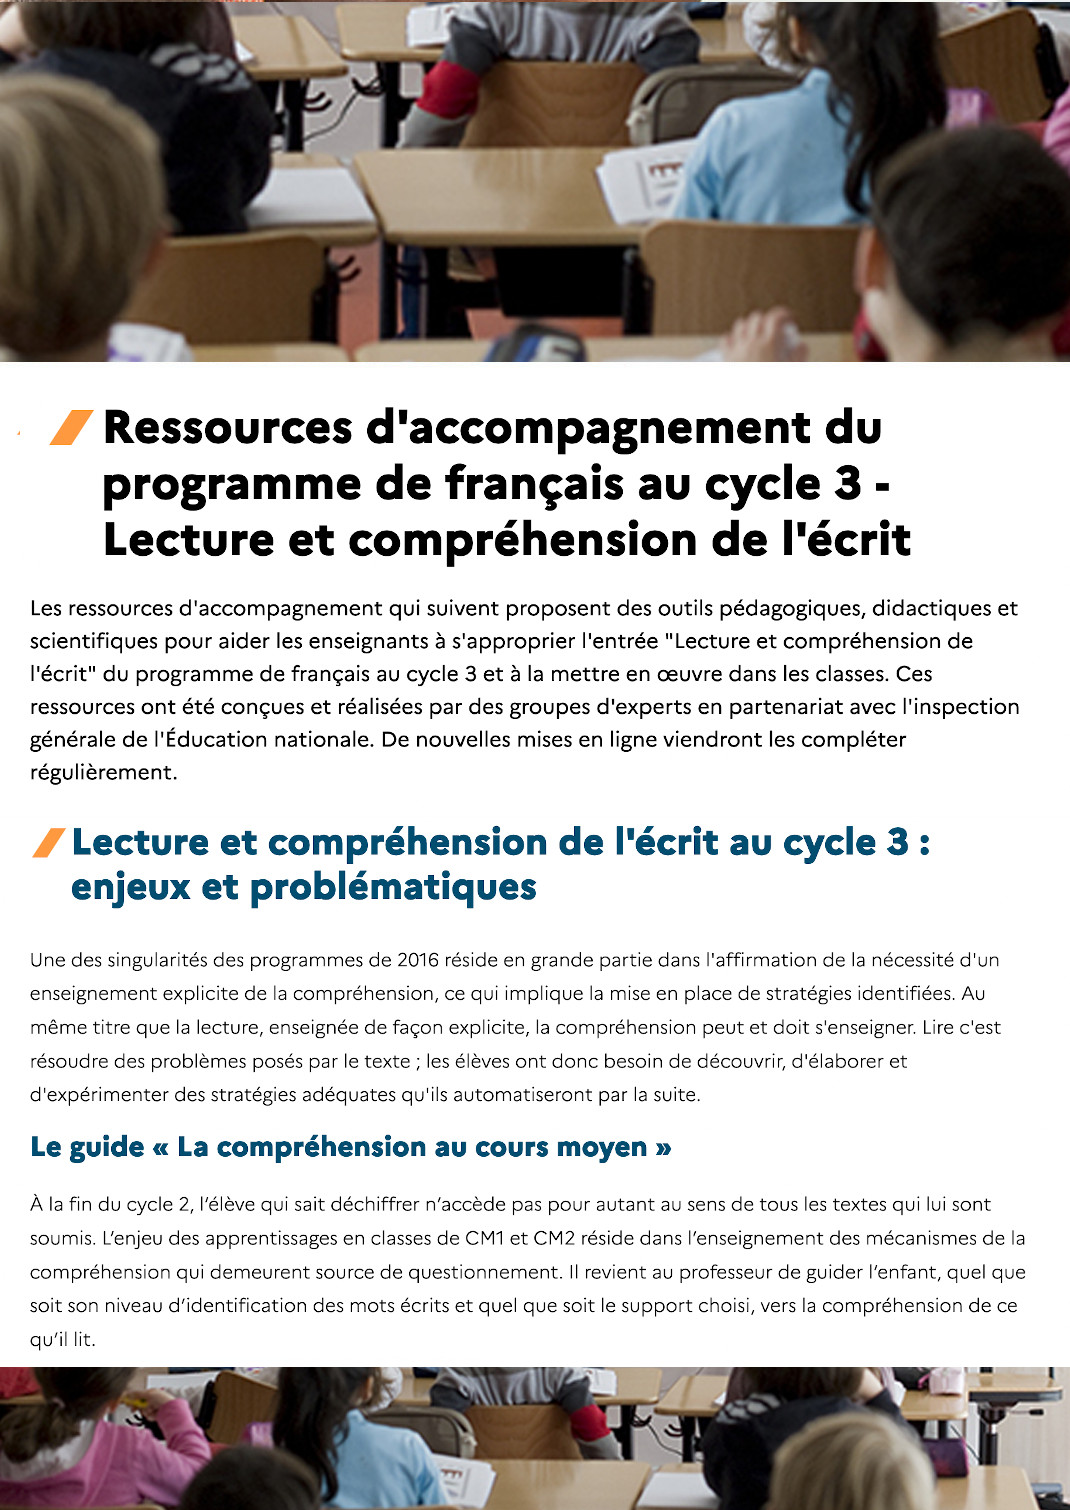 Ressources d'accompagnement du programme de français au cycle 3 - Lecture et compréhension de l'écrit